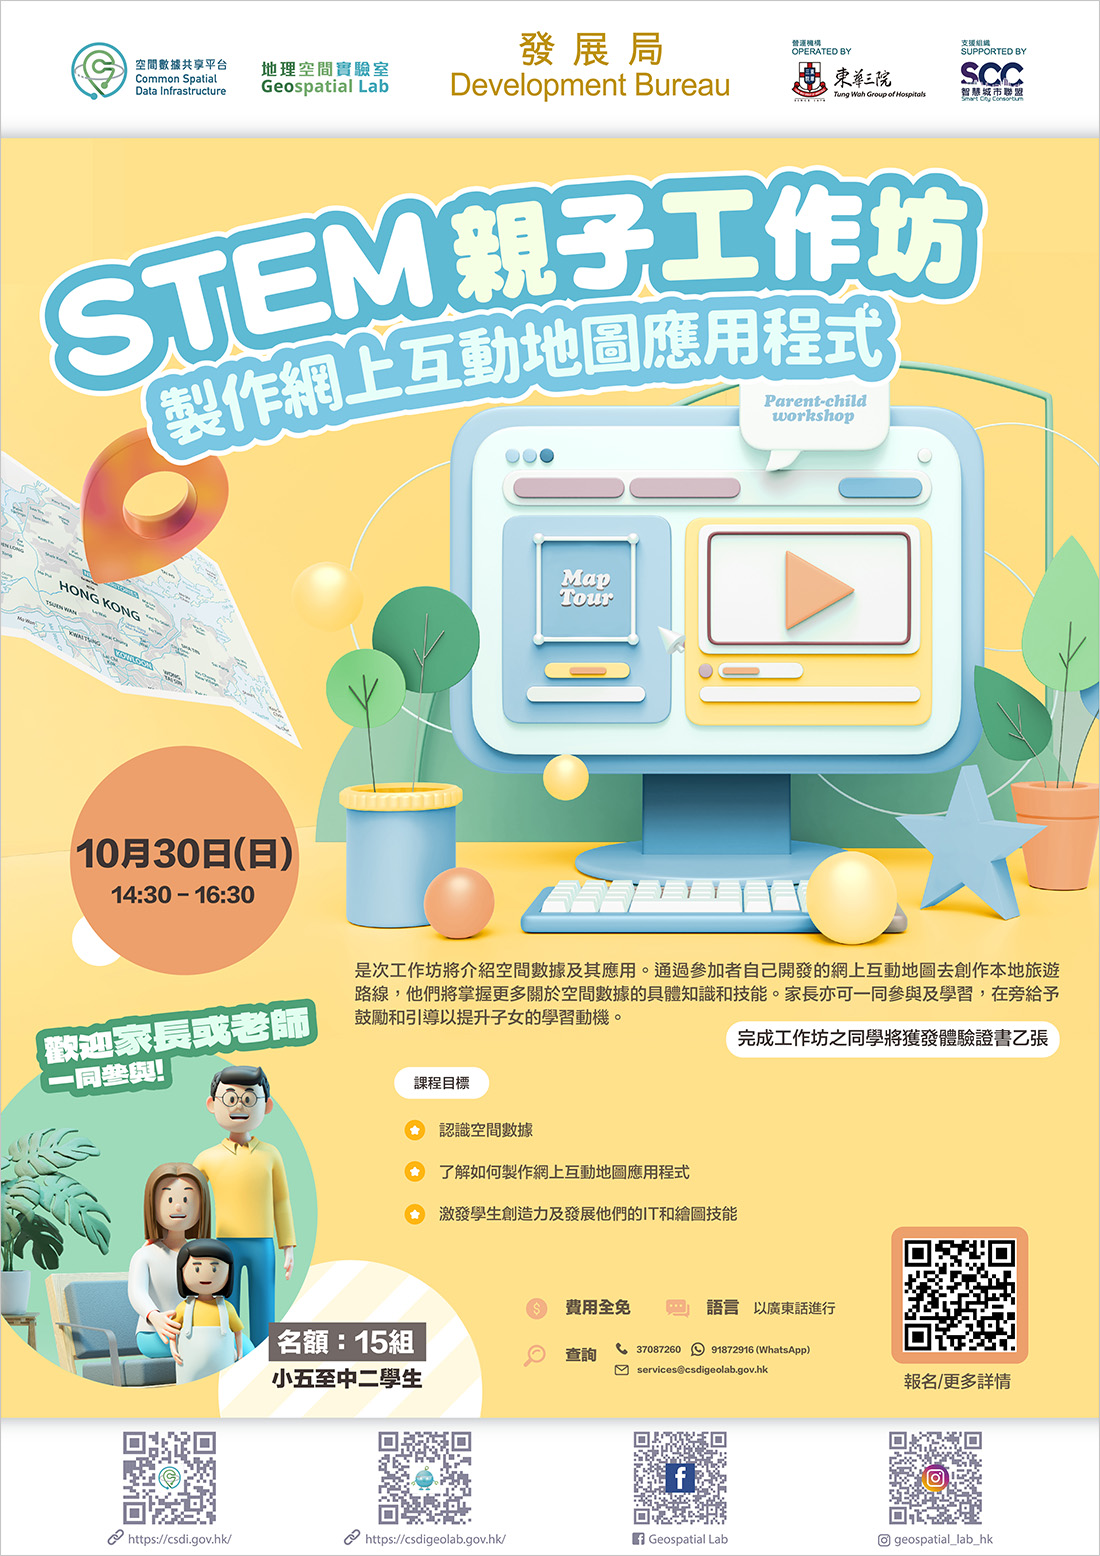 Poster of STEM Parent-child Workshop 